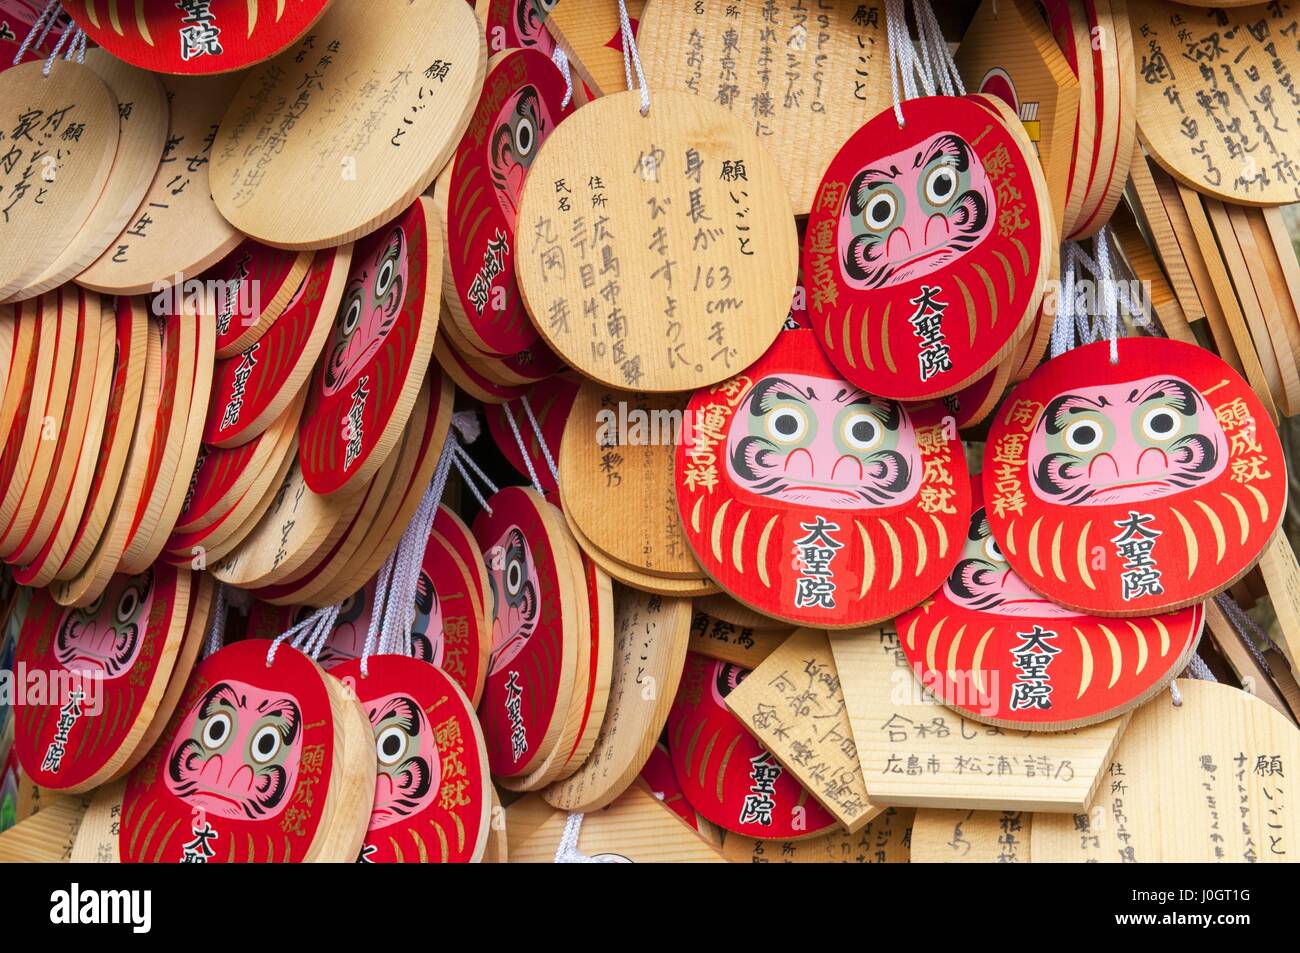 Giapponese in legno di piccole placche che scrivere la preghiera o desiderate su di esso. Daisho-nel tempio, Prefettura di Hiroshima, regione Chugoku, Giappone Foto Stock